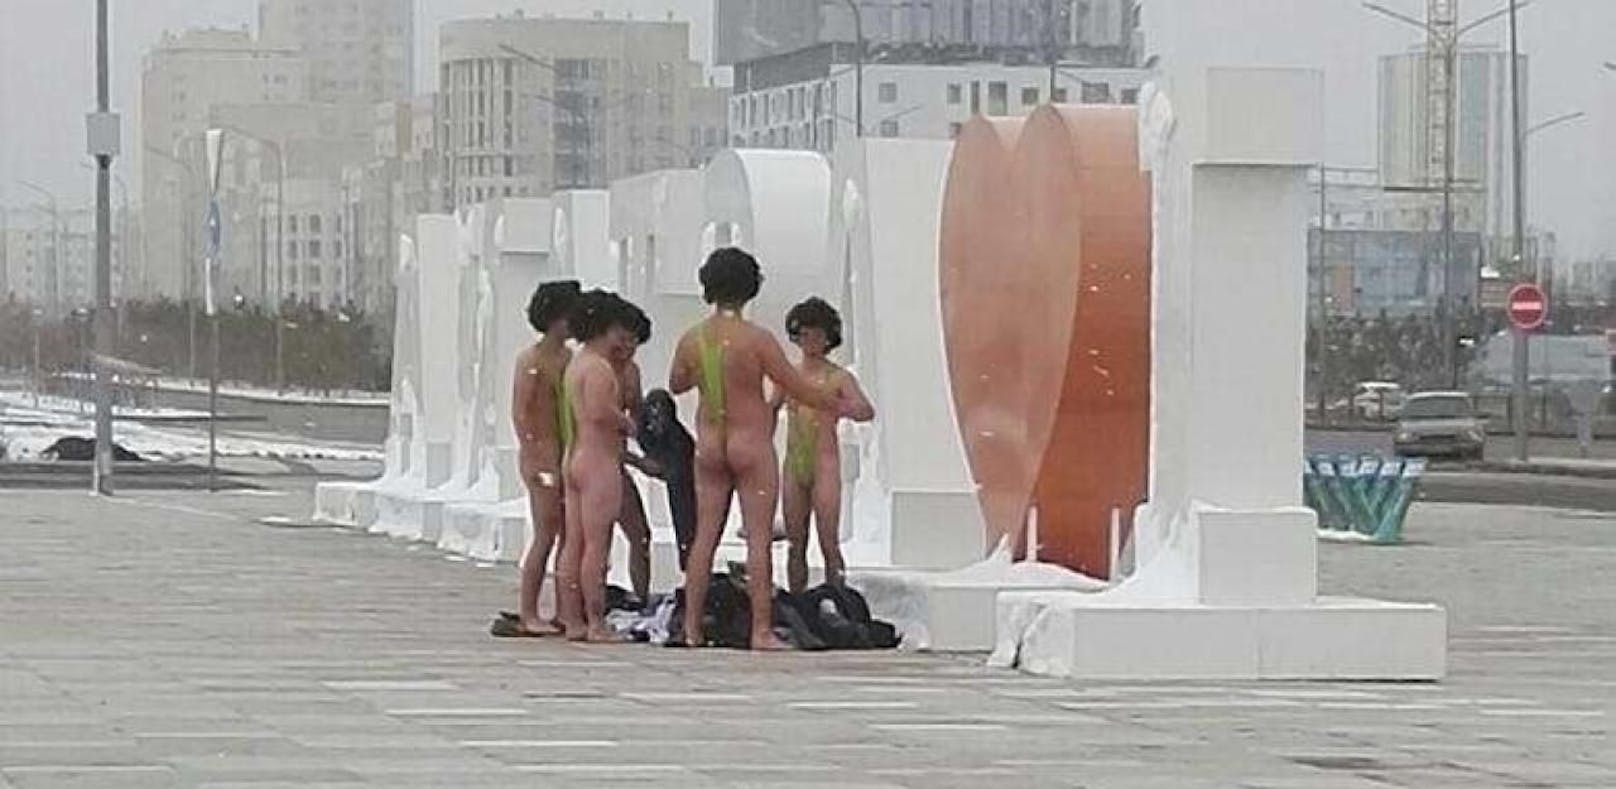 Touristen wegen "Borat"-Badehose festgenommen